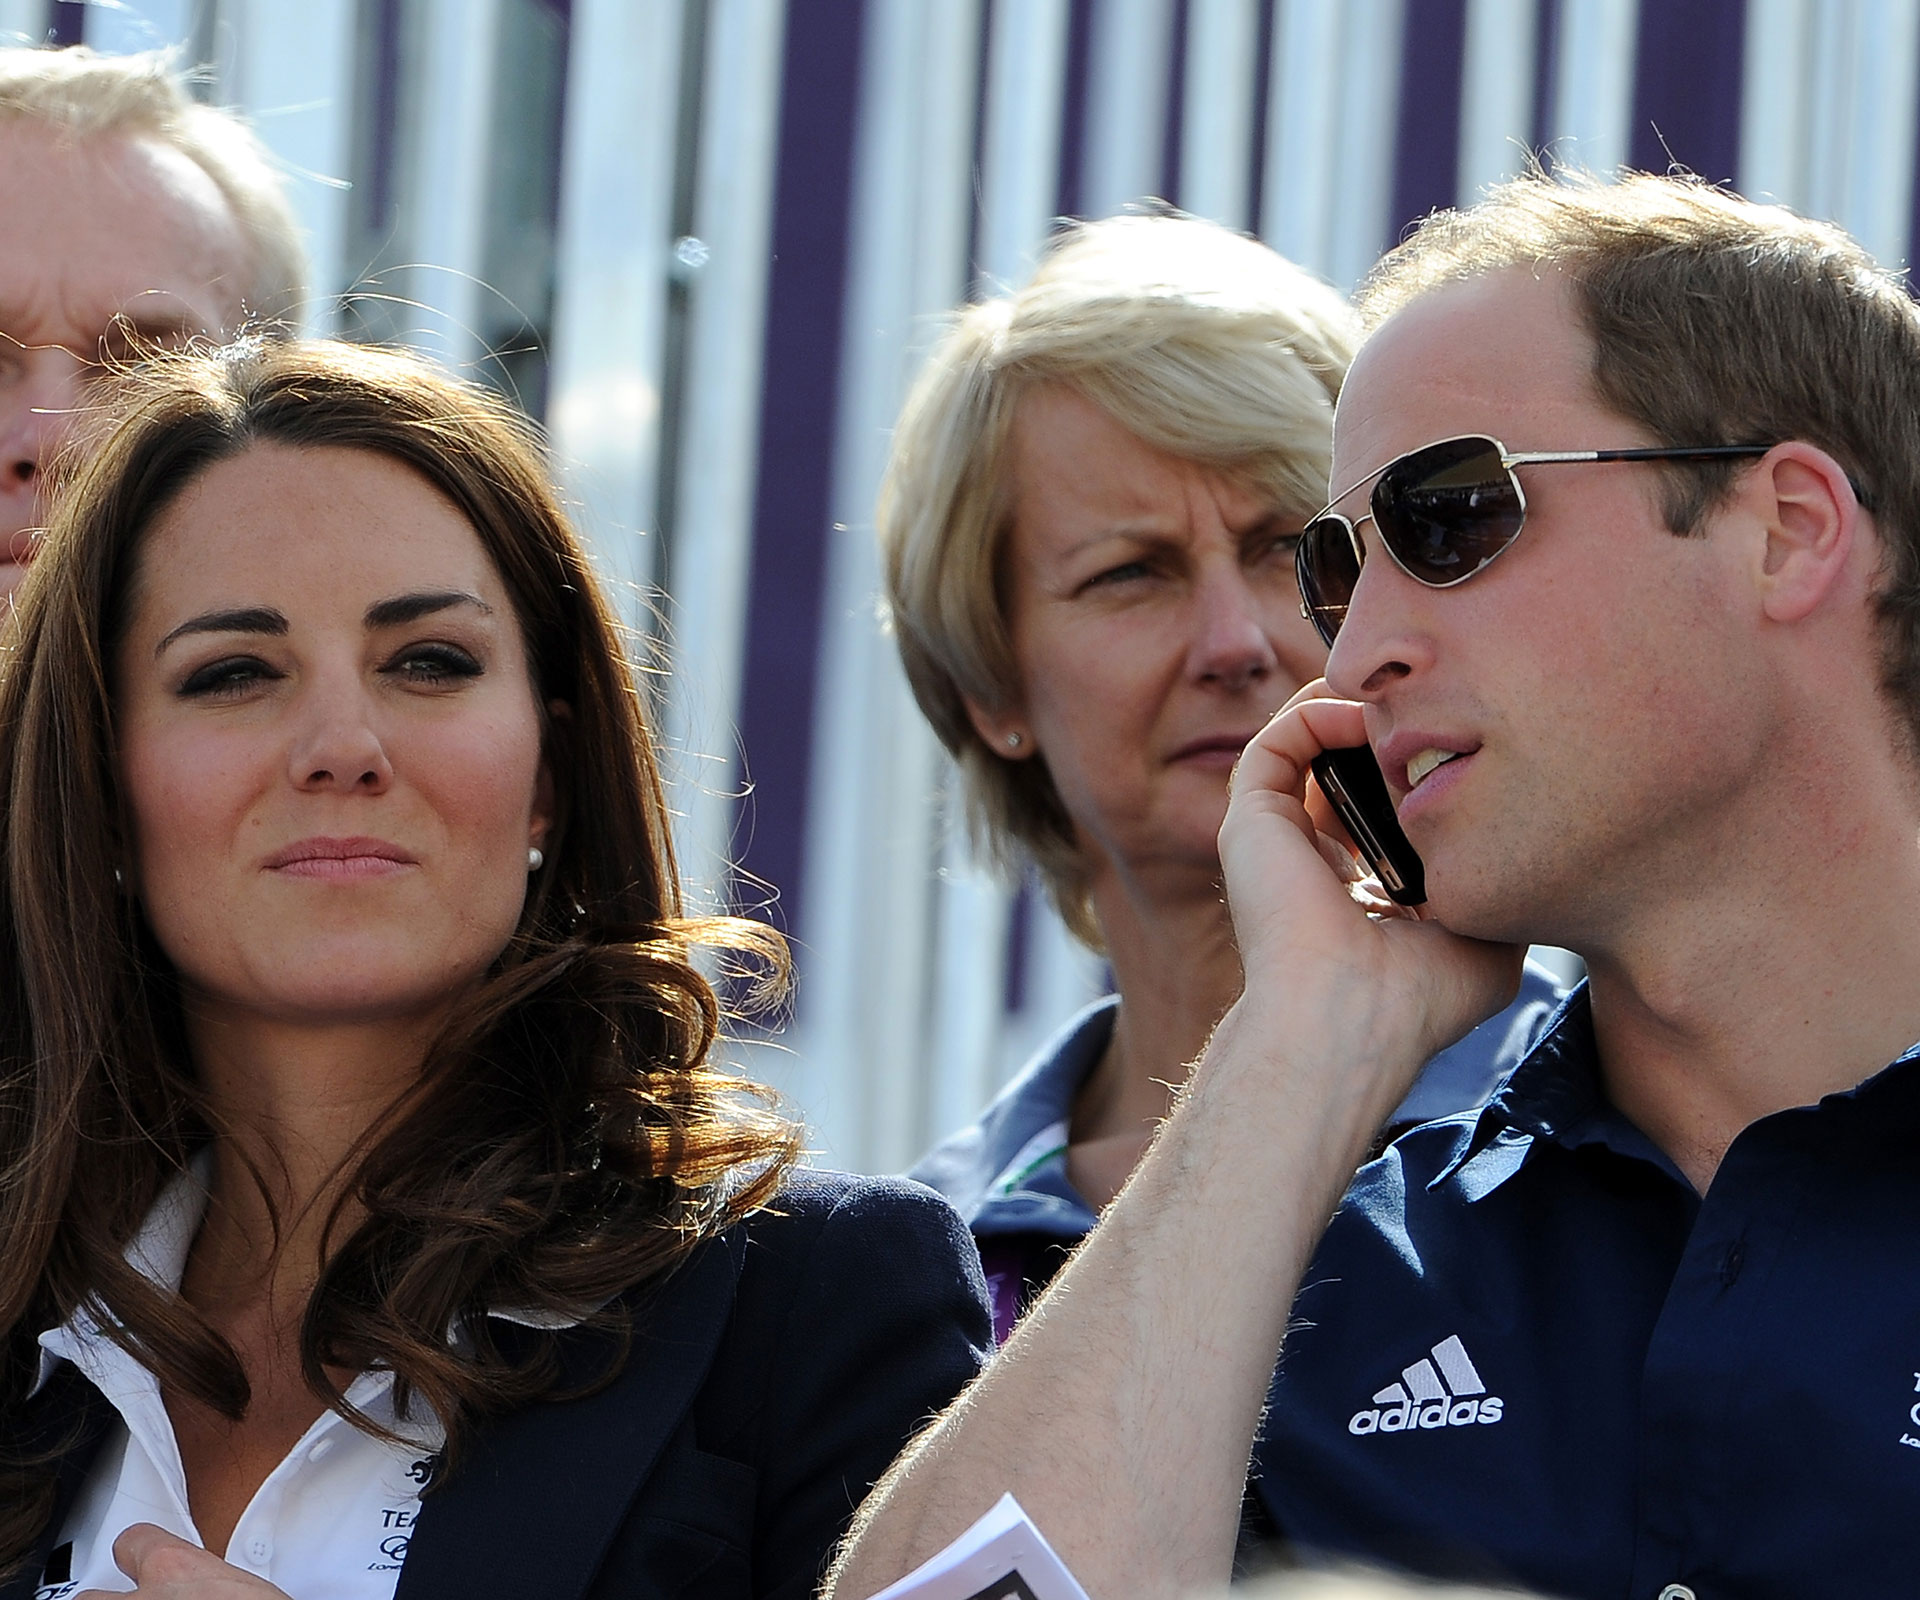 The Duke and Duchess of Cambridge 